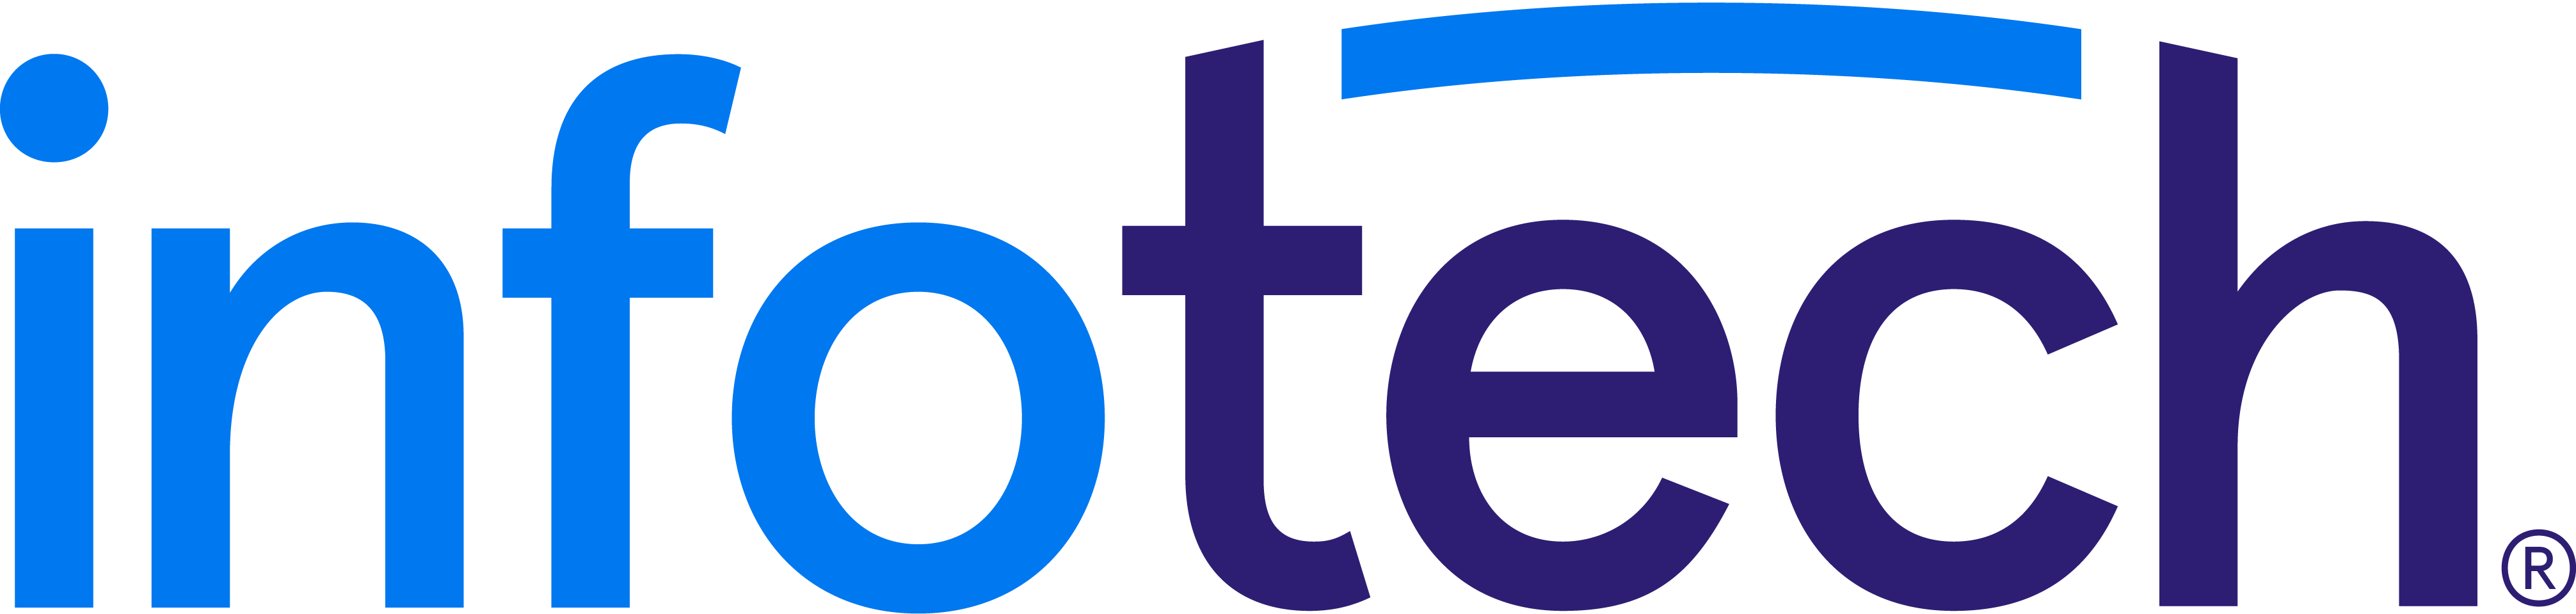 Infotech Logo